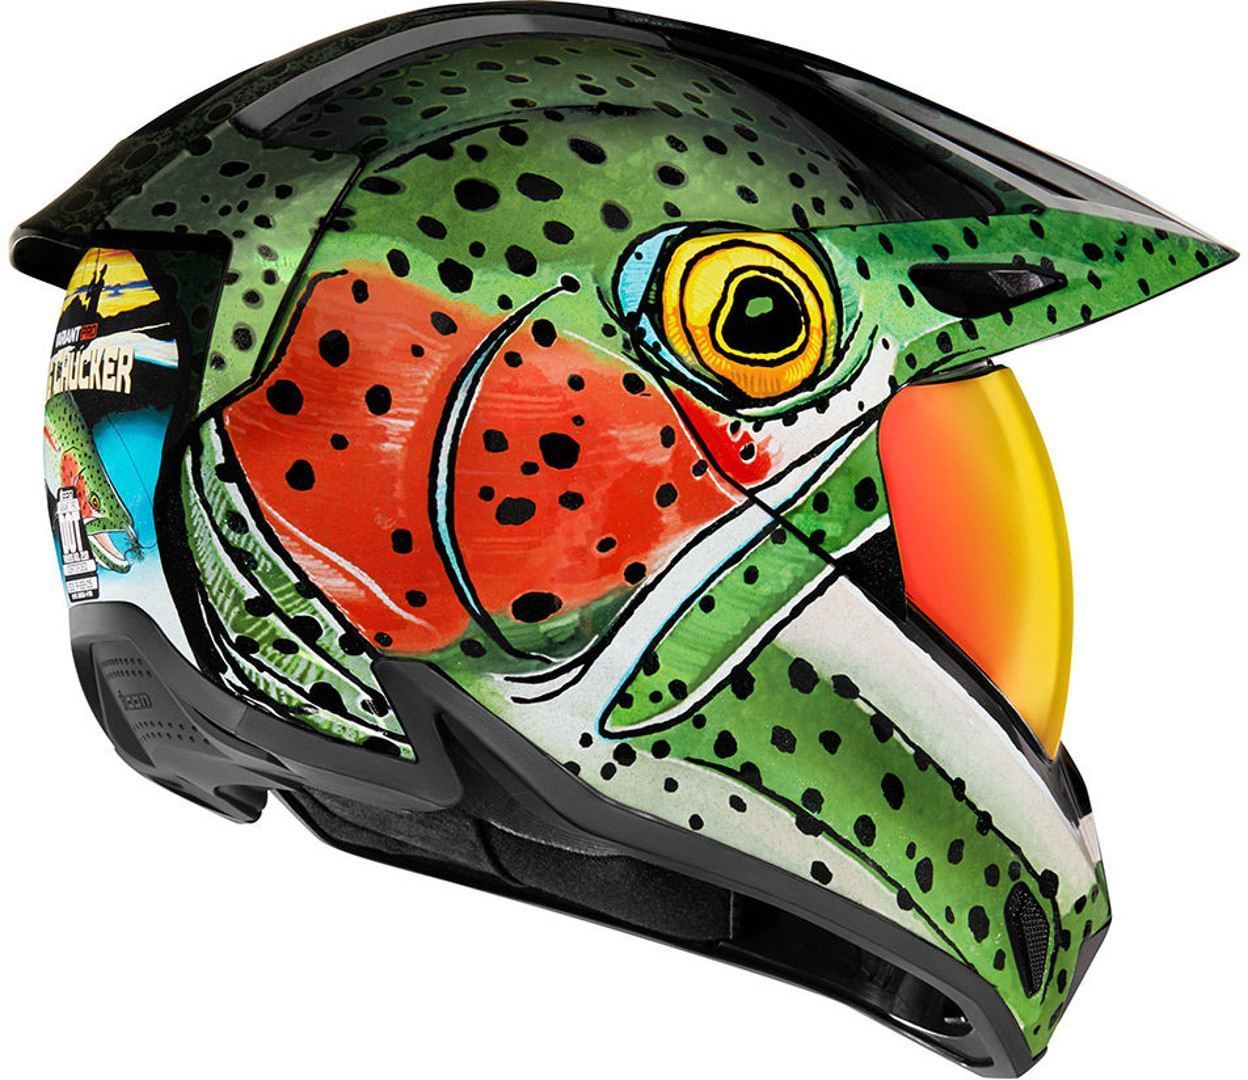 Buy MT Helmets Rapide Pro Master B5 Helmet - Red Fluo Online –  superbikestore